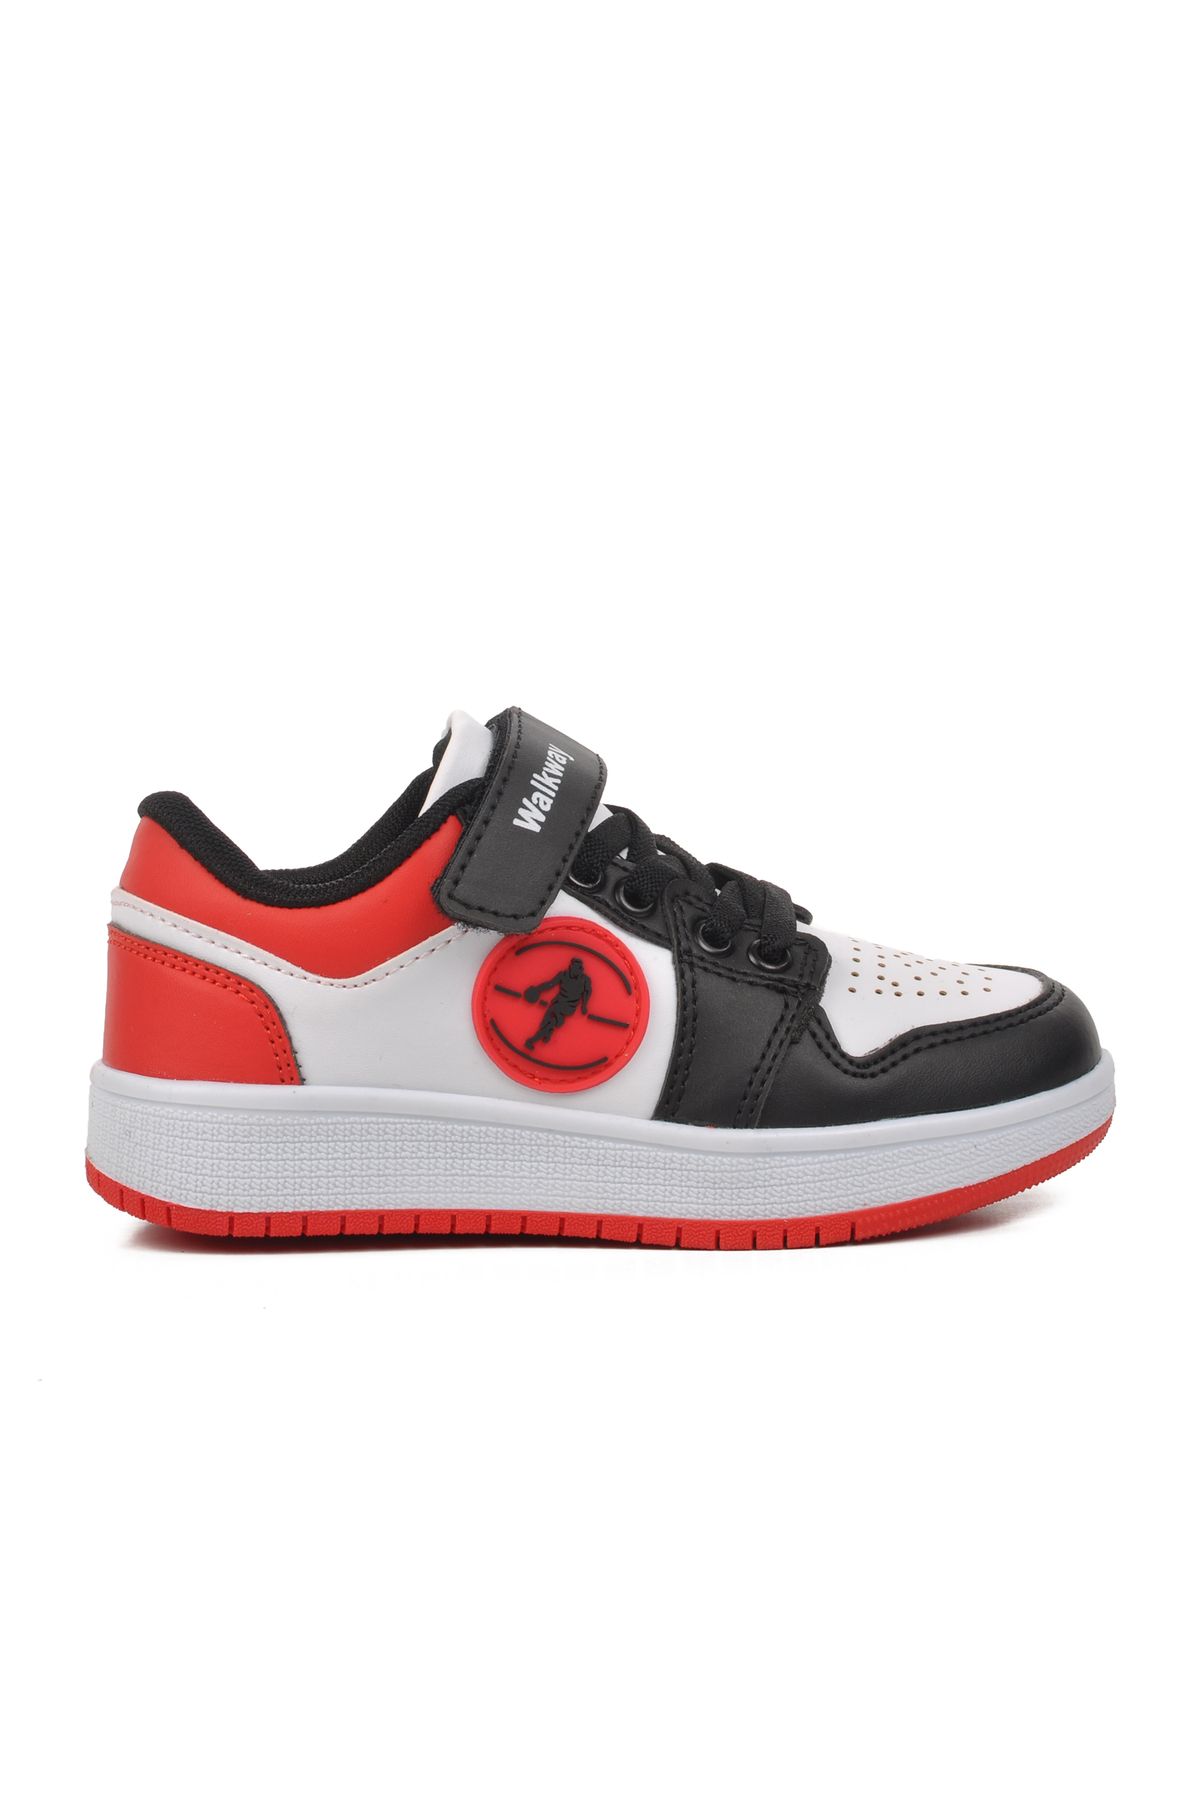 WALKWAY Wkly-Slg-P Siyah-Beyaz-Kırmızı Kız/Erkek Çocuk Spor Ayakkabı